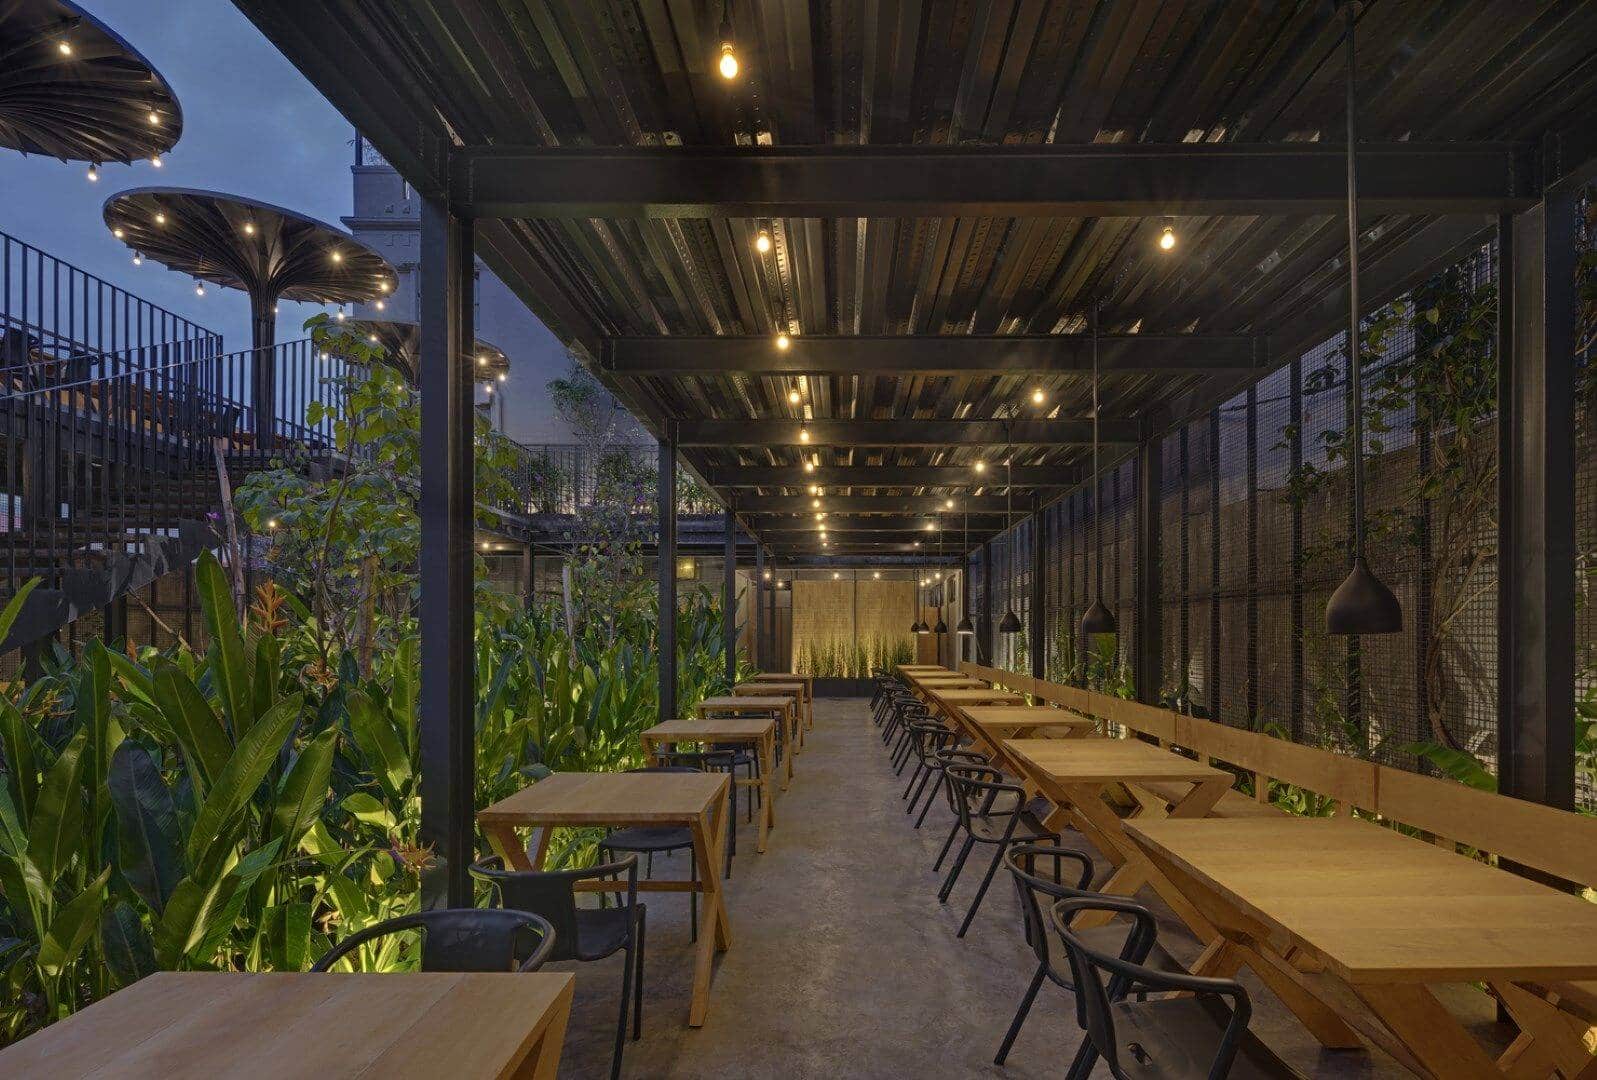  Garden Restaurant Interior Design